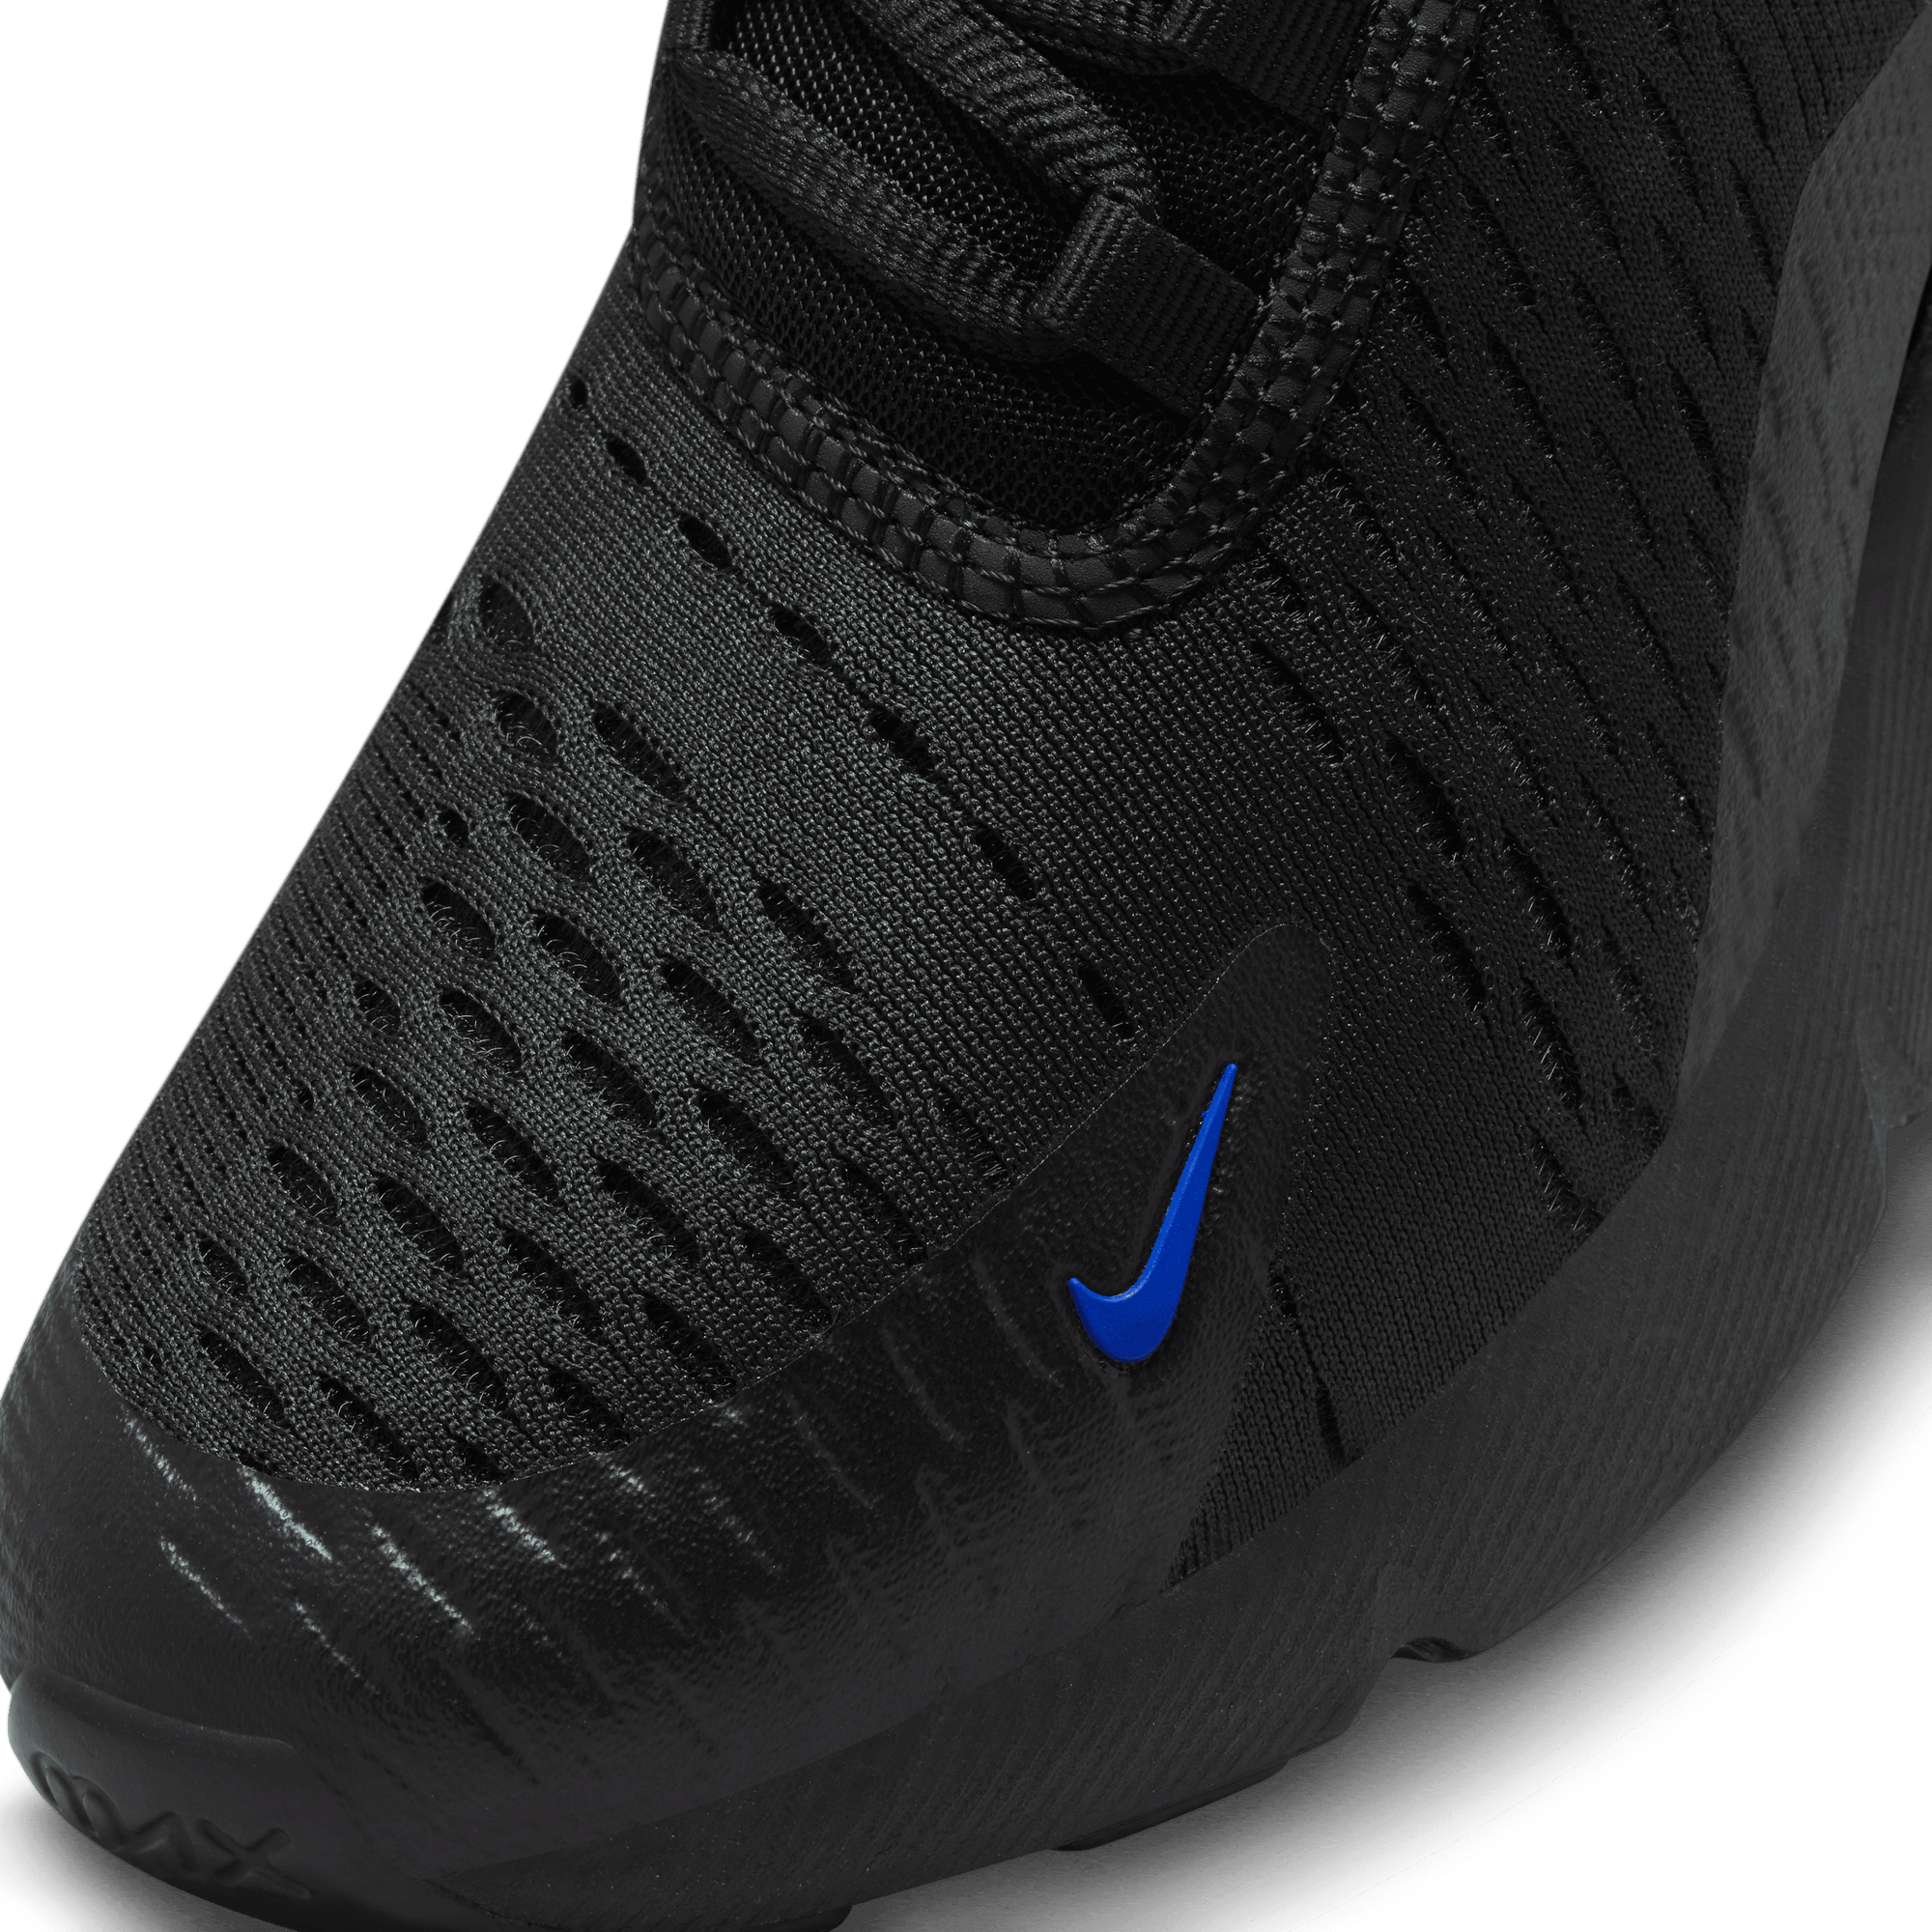 Nike Air Max 720 - Nohble